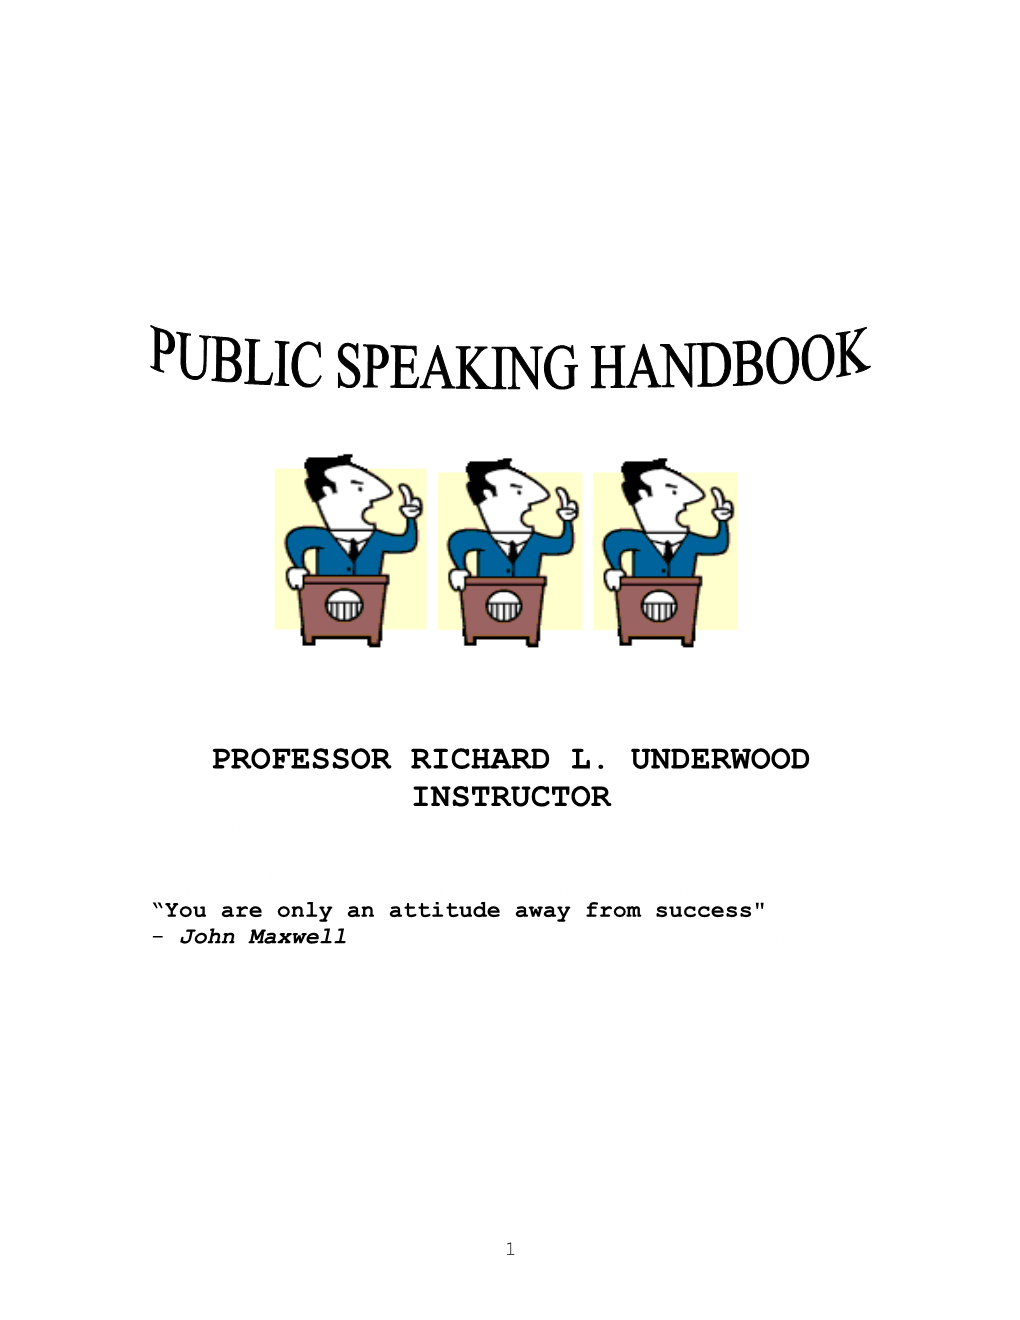 Public Speaking (Cc 132T)